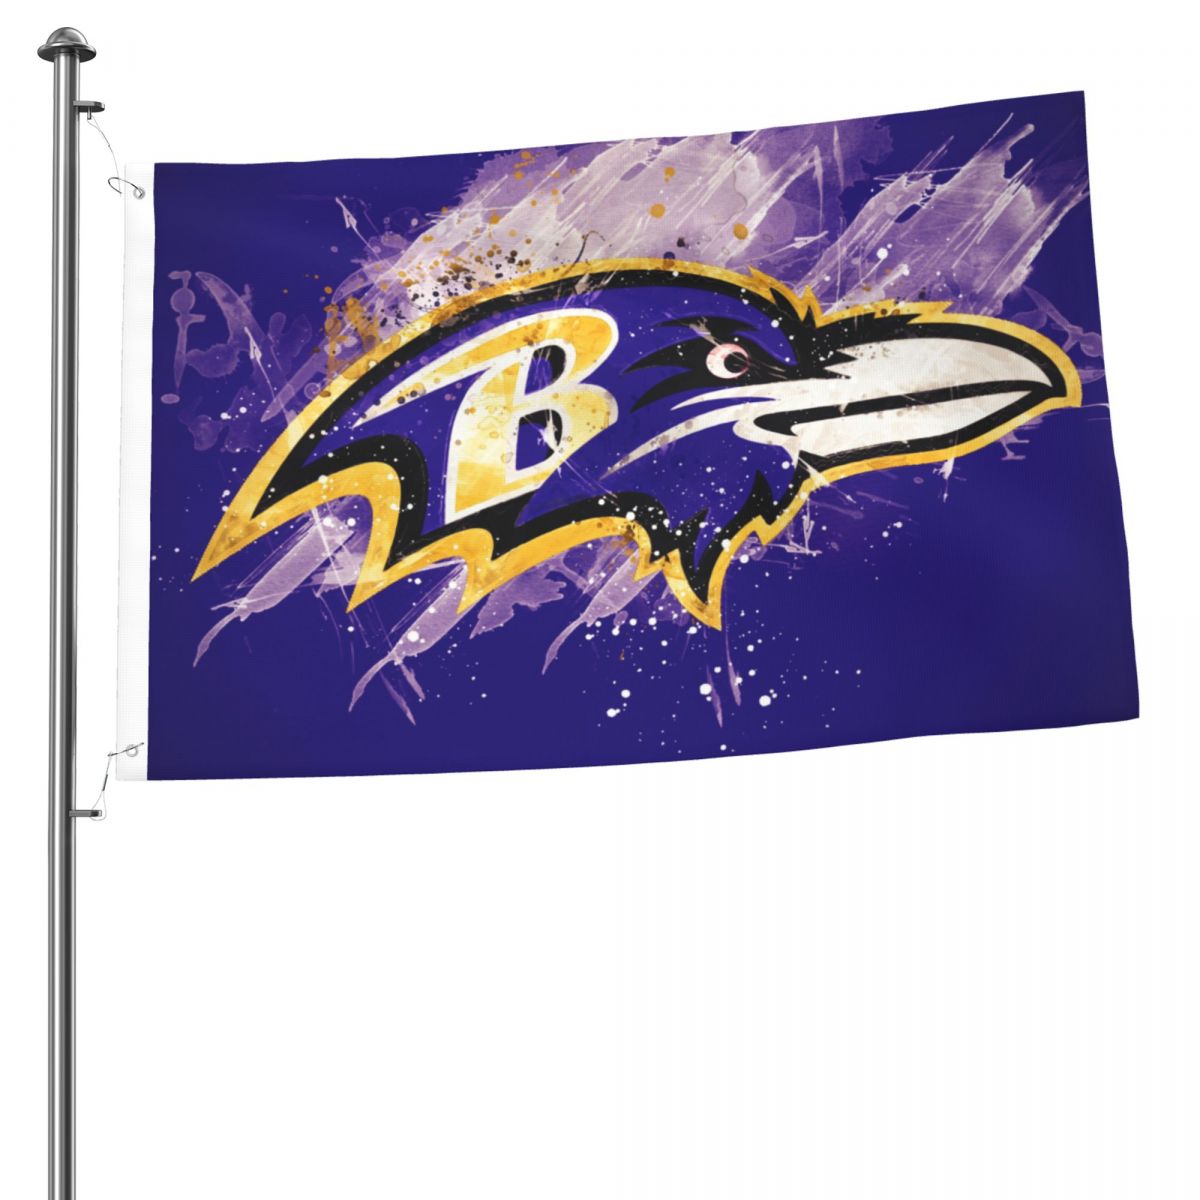 Baltimore Ravens Artistic 2x3 FT UV Resistant Flag